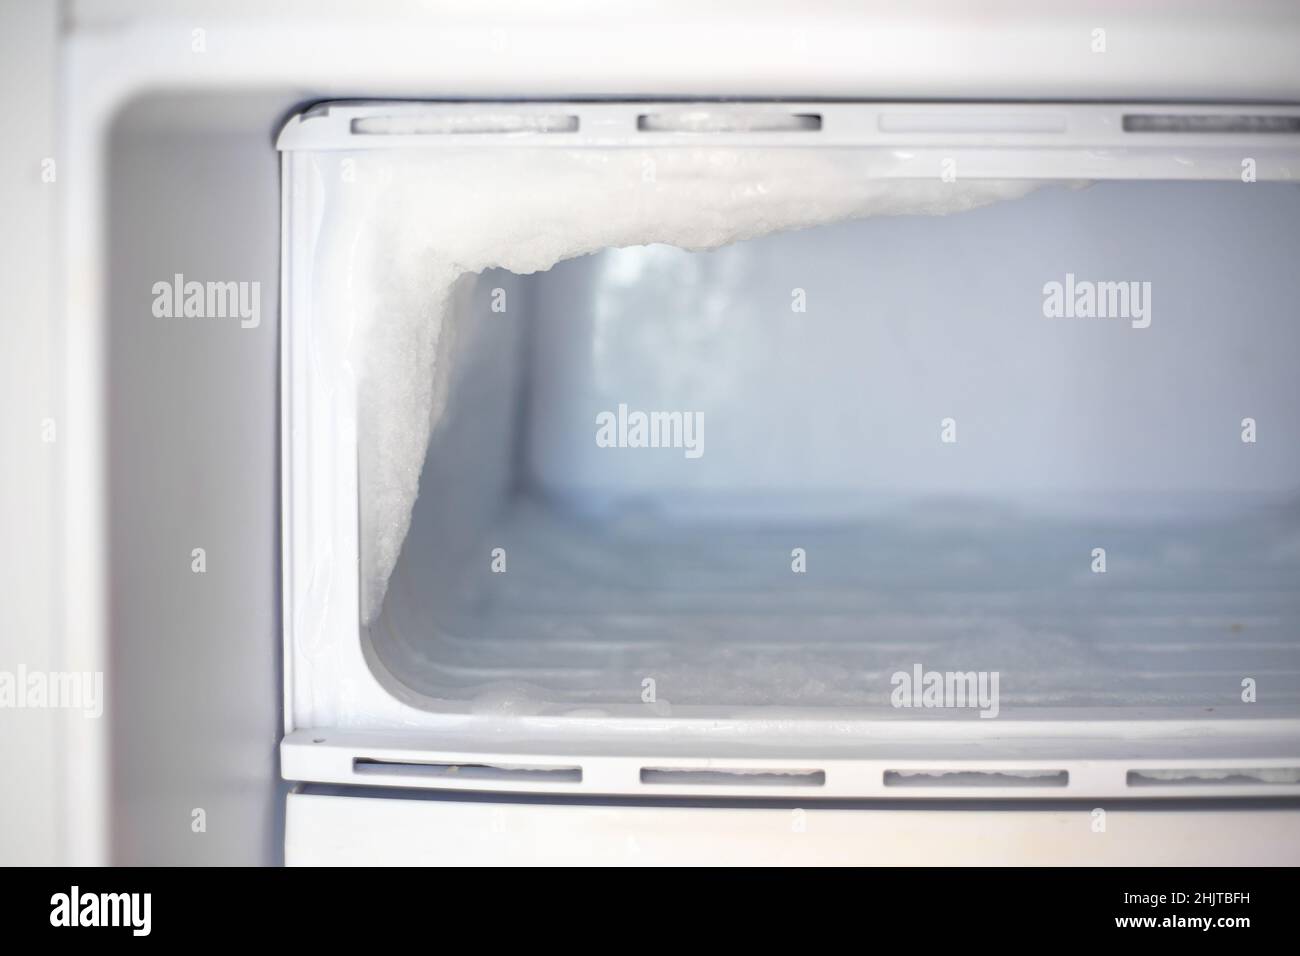 Frigo congelatore con ghiaccio congelato. Manutenzione e sbrinamento del frigorifero. Foto Stock